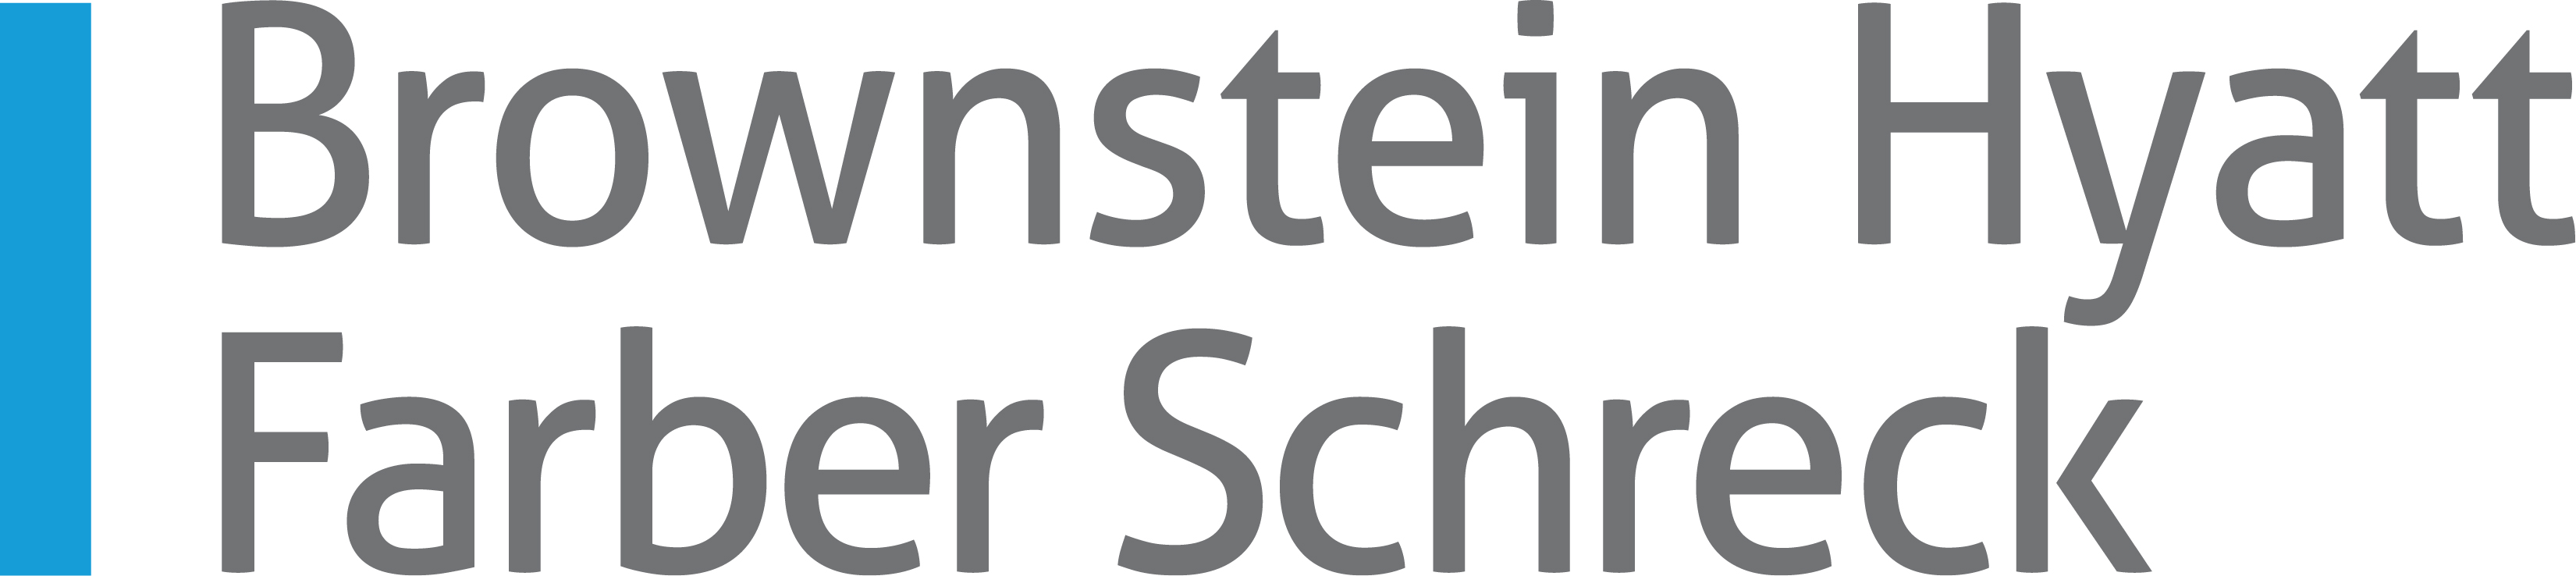 Brownstein Hyatt Farber Schreck logo